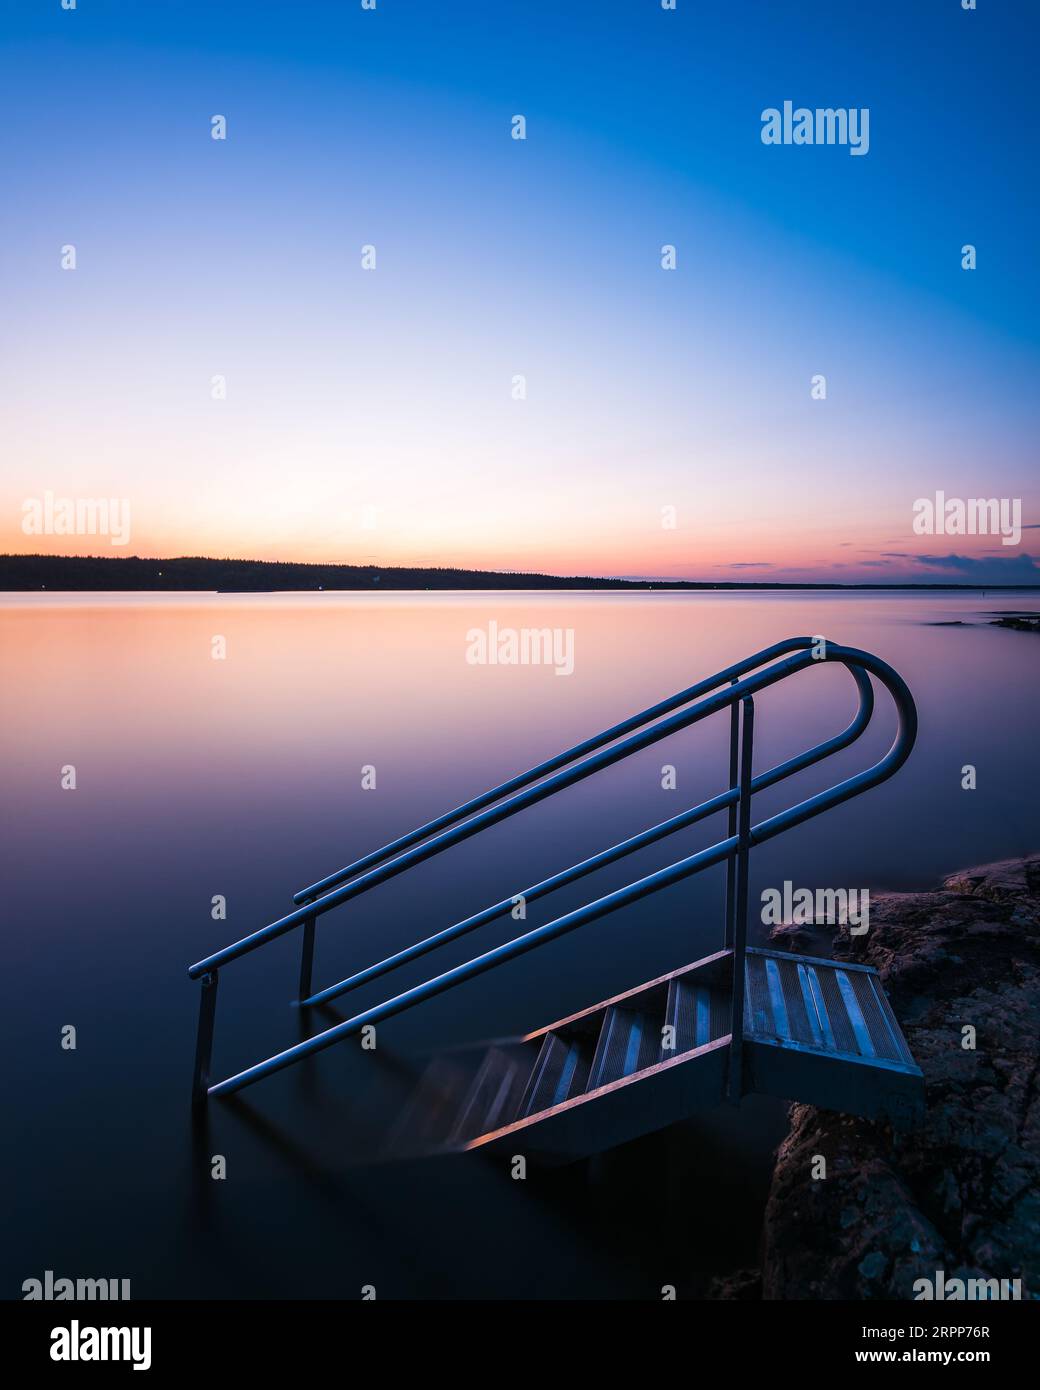 Sonnenuntergang über dem ruhigen See; ruhige Treppe zur Schönheit der Natur. Keine Personen. Schweden. Stockfoto